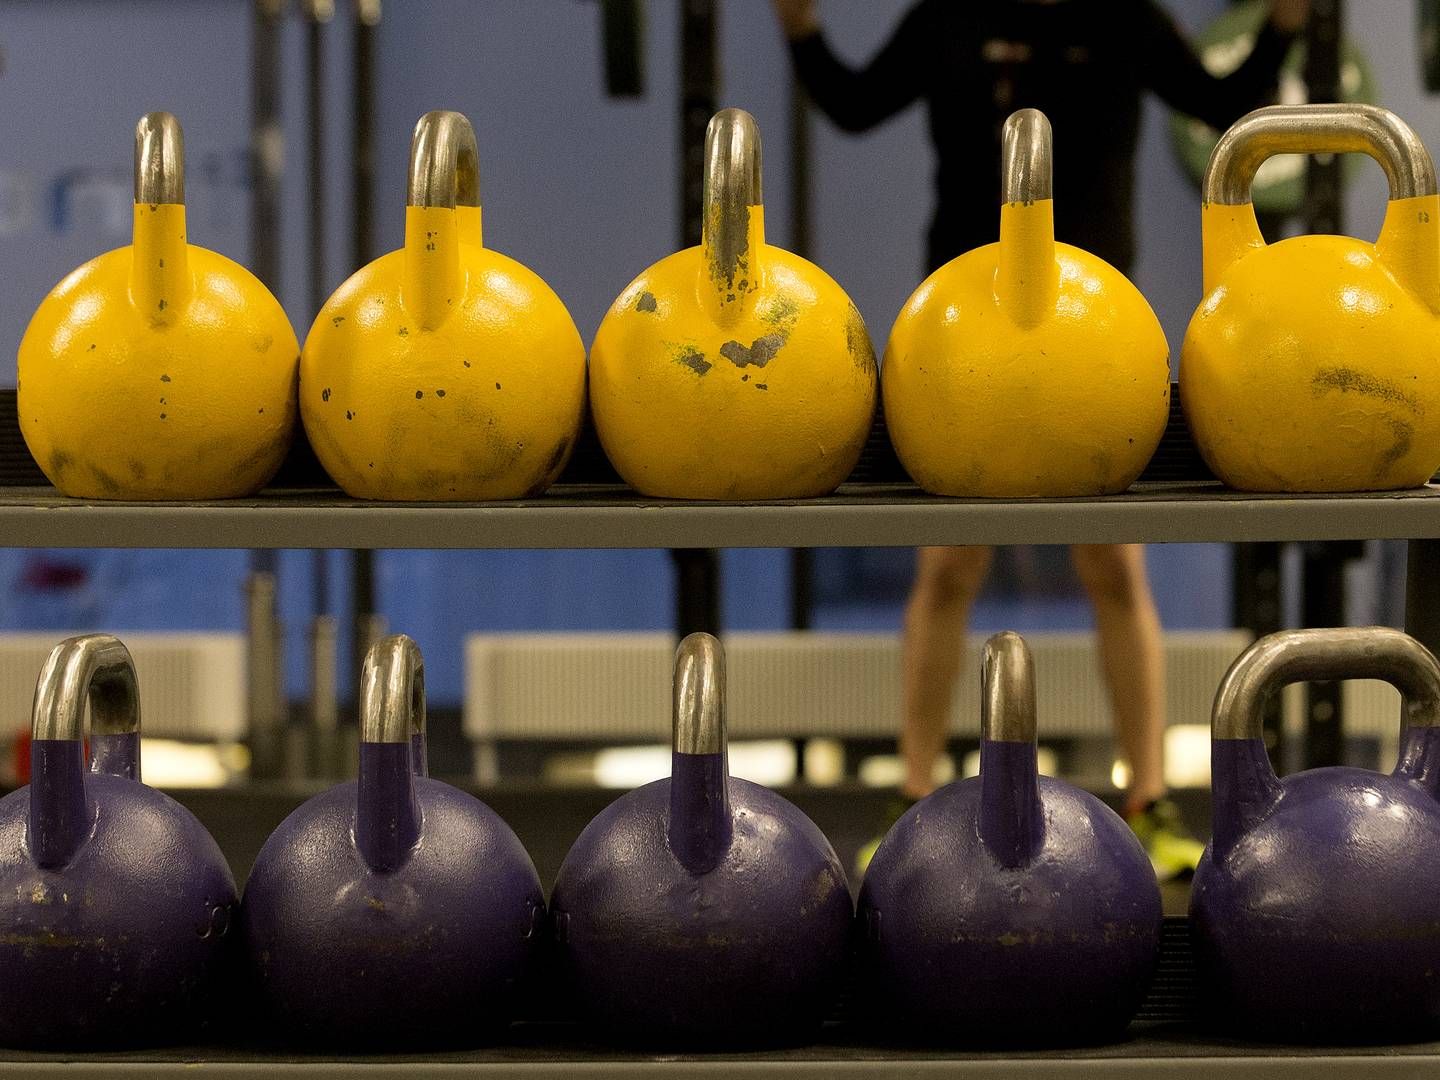 Billig-Fitness voksede sig store under coronatvangslukningen af landets fitnesscentre. Siden den endelige genåbning er salget af håndvægte, kettlebells og træningselastikker dog styrtdykket. | Foto: Finn Frandsen